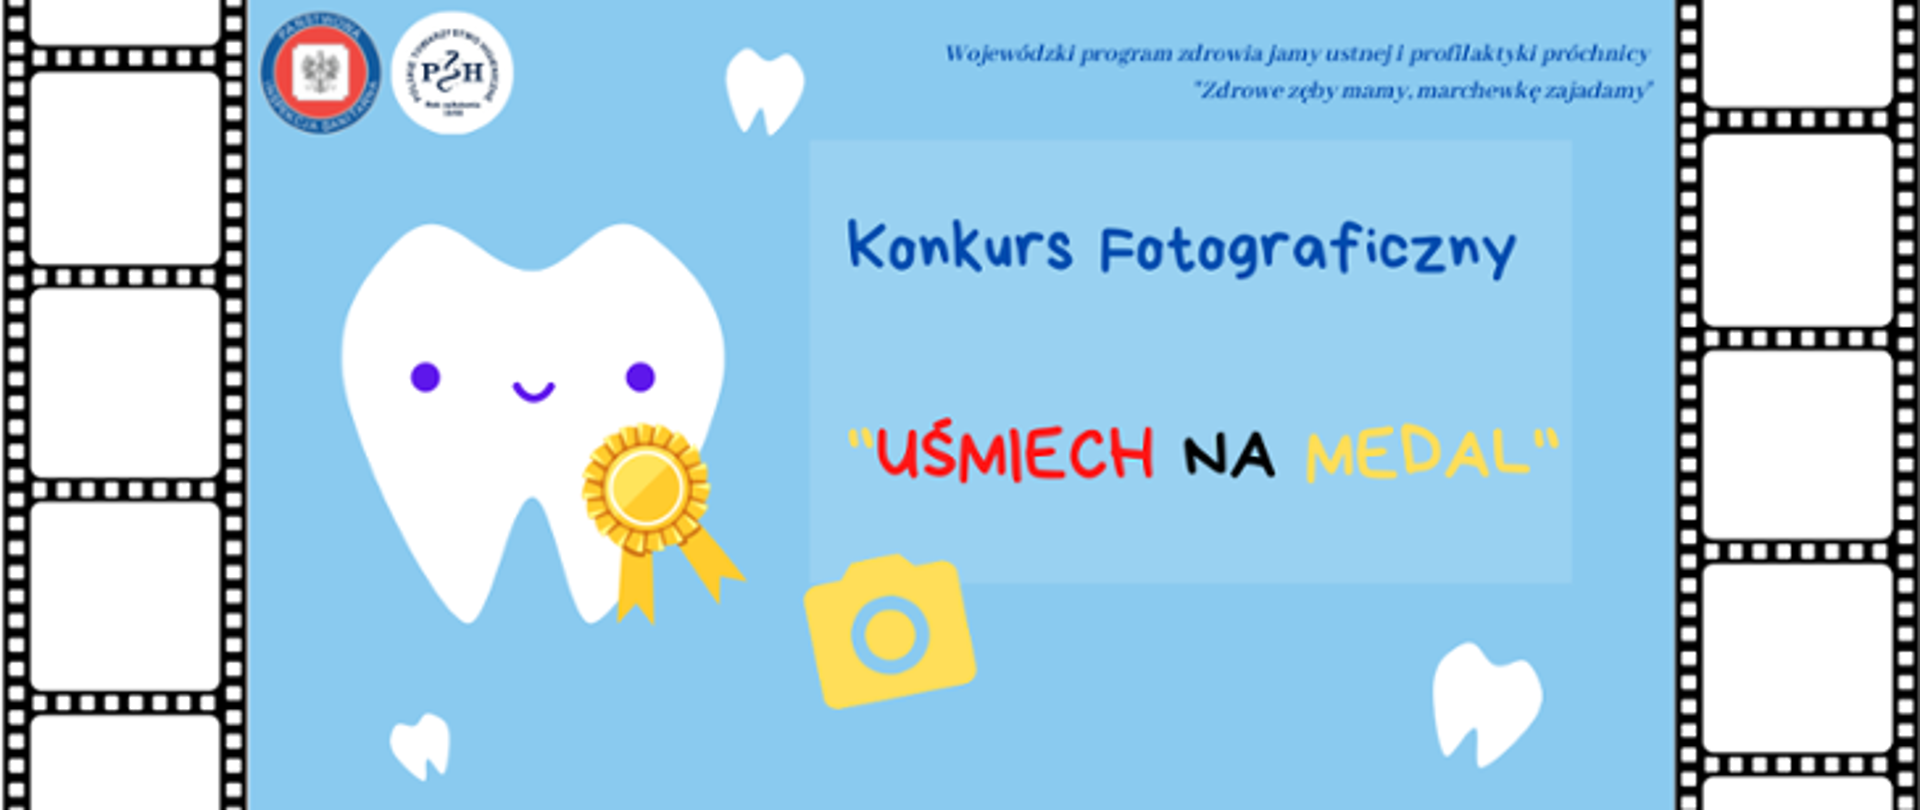 Konkurs fotograficzny Uśmiech na medal